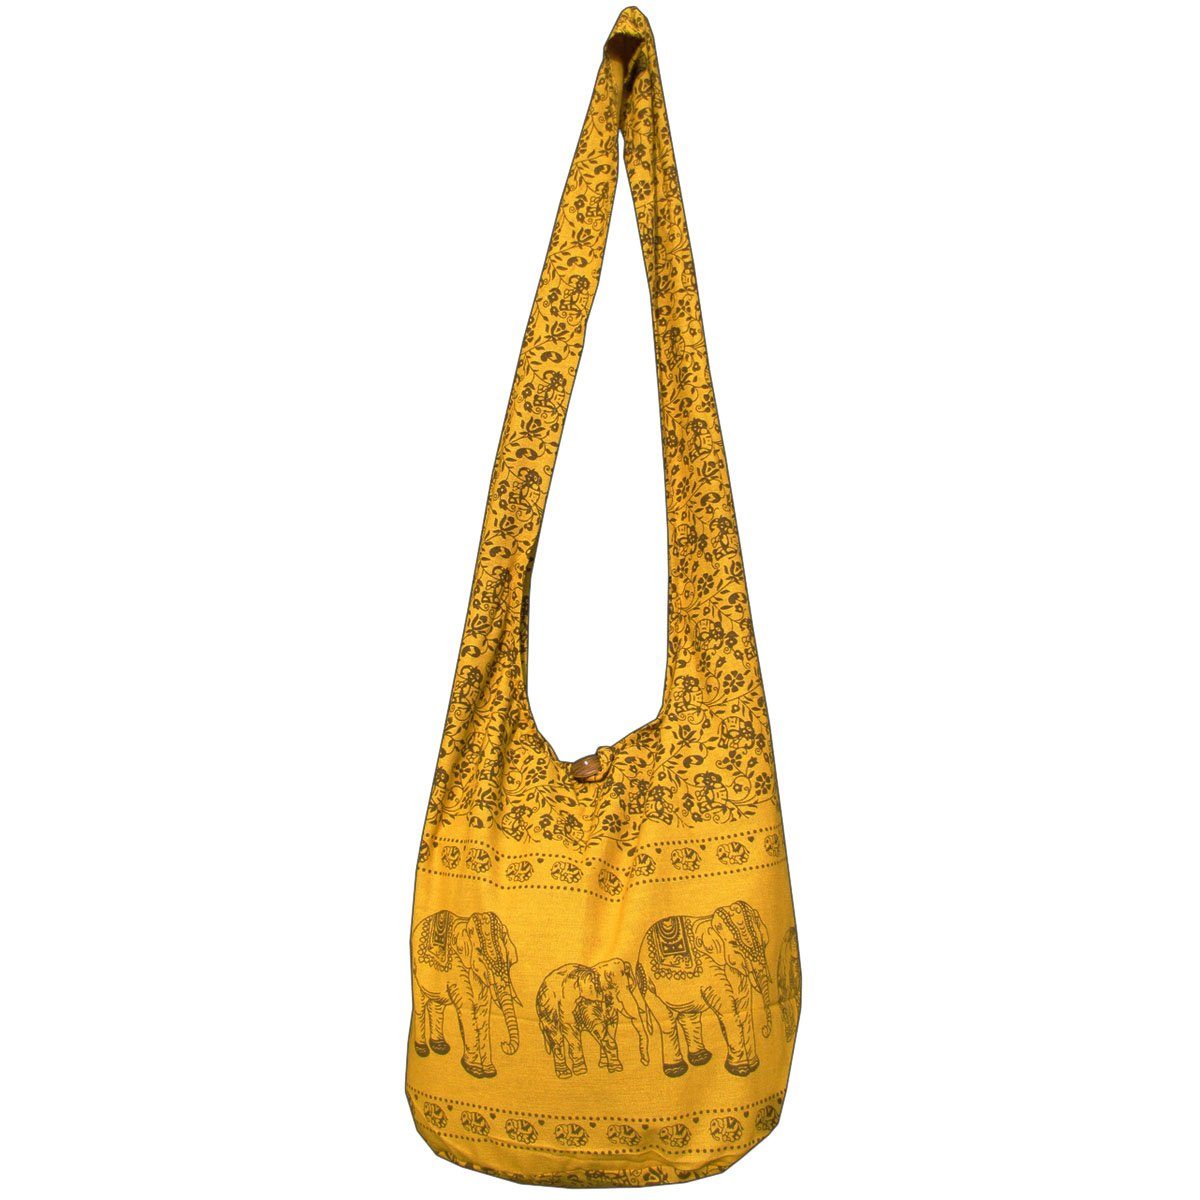 100% Elefant Strandtasche aus in Handtasche Schulterbeutel geeignet PANASIAM Beuteltasche Schultertasche Wickeltasche Goldgelb 2 Umhängetasche Größen, als Baumwolle oder